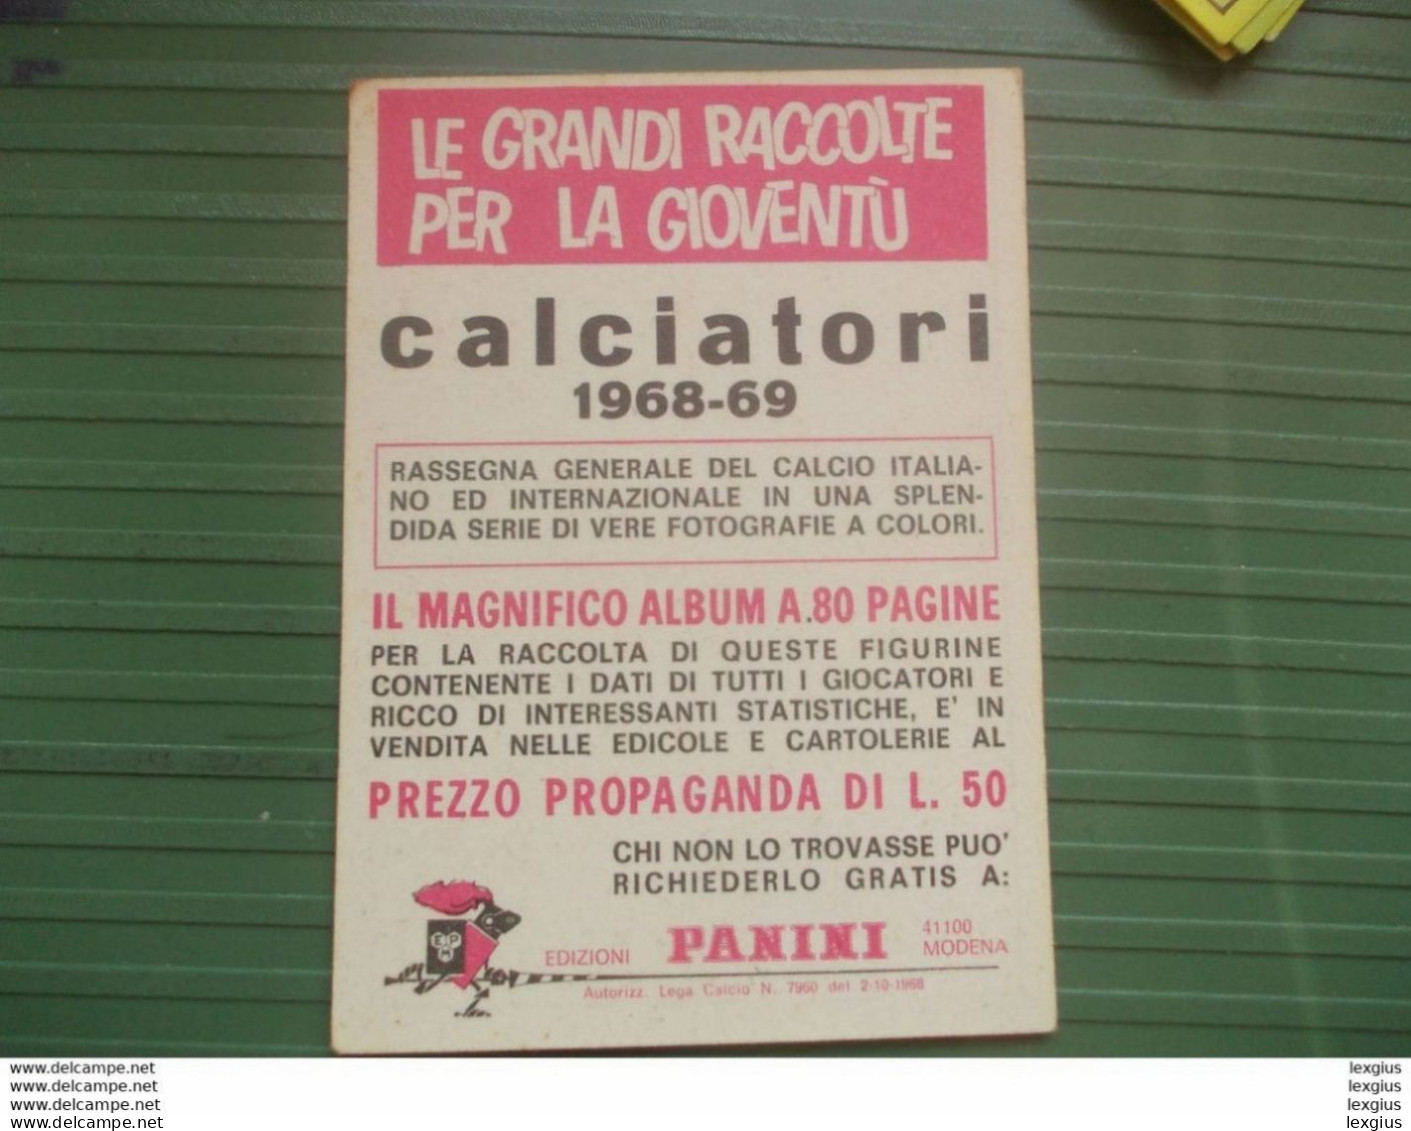 RIVERA STORIA DELLE COPPE ALBUM FIGURINE CALCIATORI PANINI 1968 69 ORIGINAL UNUSED STICKER (sd) - Edición Italiana